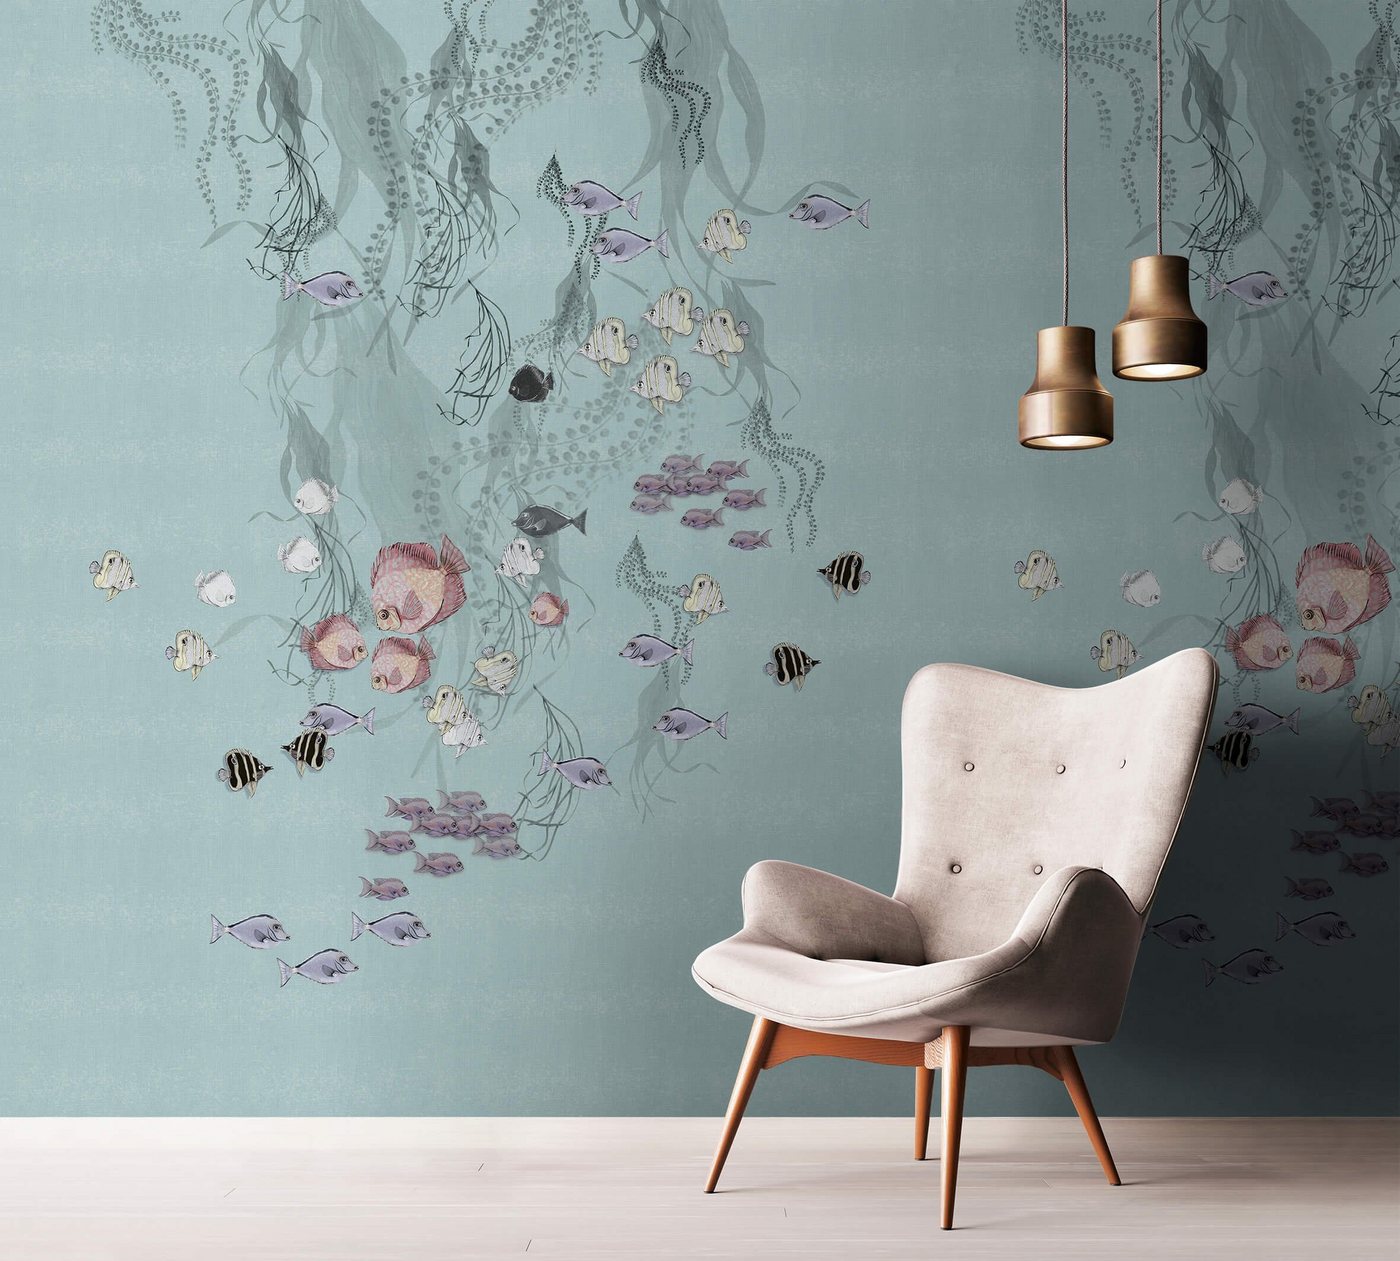 Newroom Vliestapete, [ 3,4 x 2,12m ] großzügiges Motiv - kein wiederkehrendes Muster - nahtlos große Flächen möglich - Fototapete Wandbild Tiere Fische Algen Made in Germany von Newroom